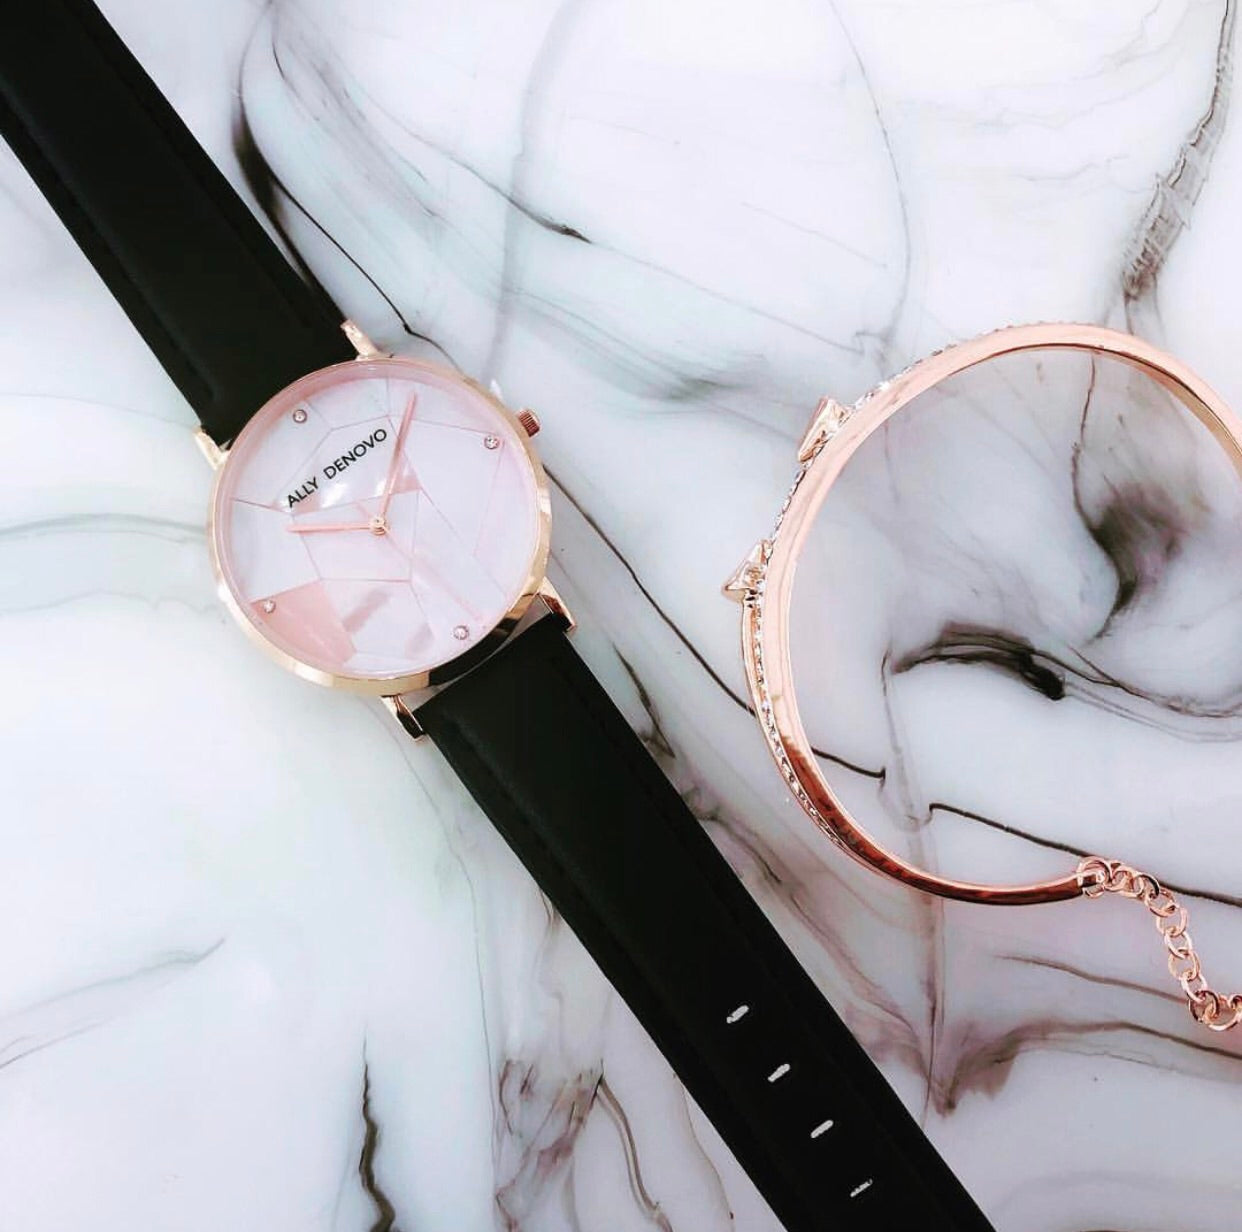 Gaia pearl皮革腕錶-粉晶菱形琉璃玫瑰金框海軍藍真皮錶帶  